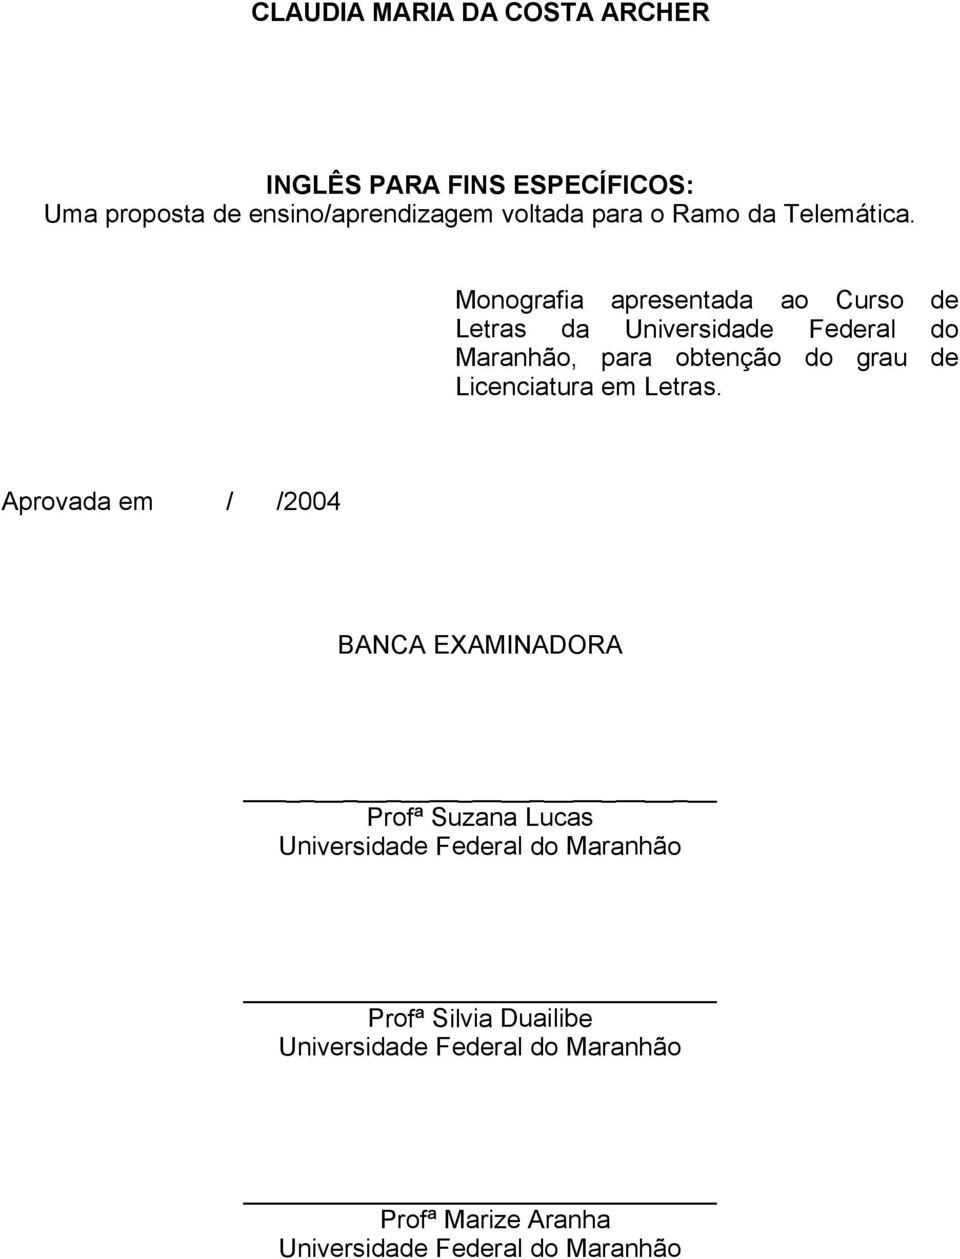 Monografia apresentada ao Curso de Letras da Universidade Federal do Maranhão, para obtenção do grau de